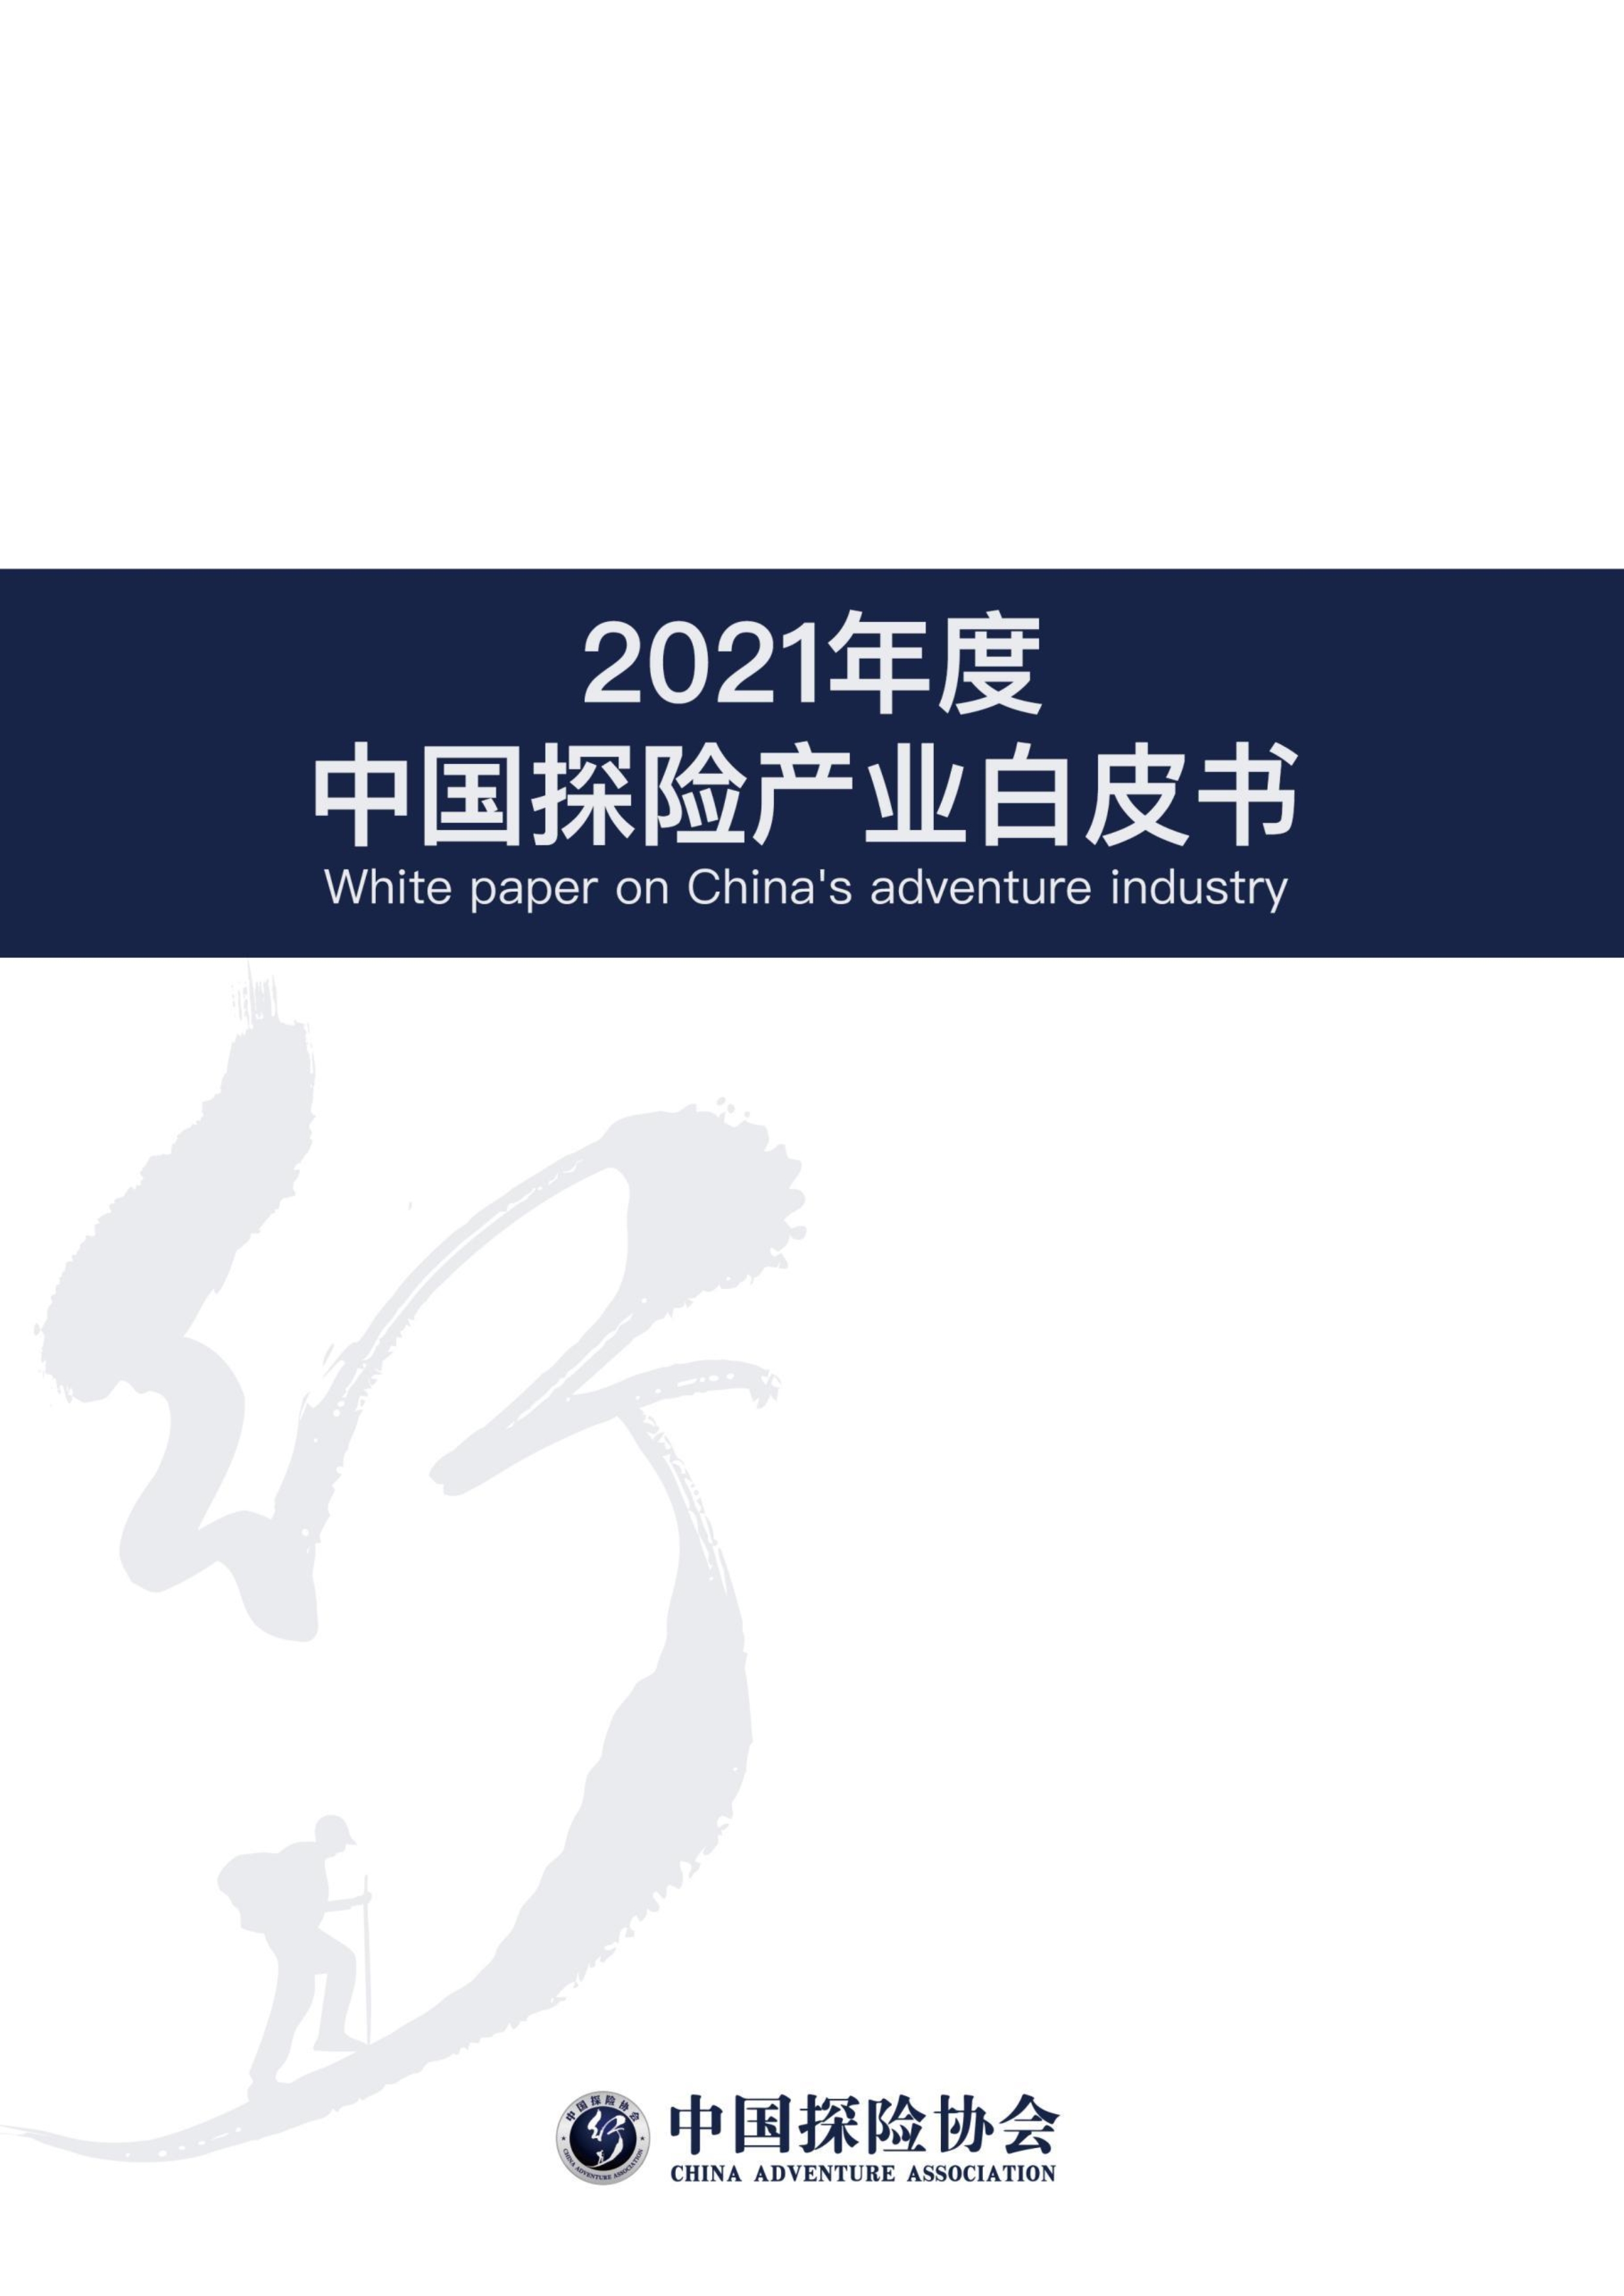 2021年度《中国探险产业白皮书》